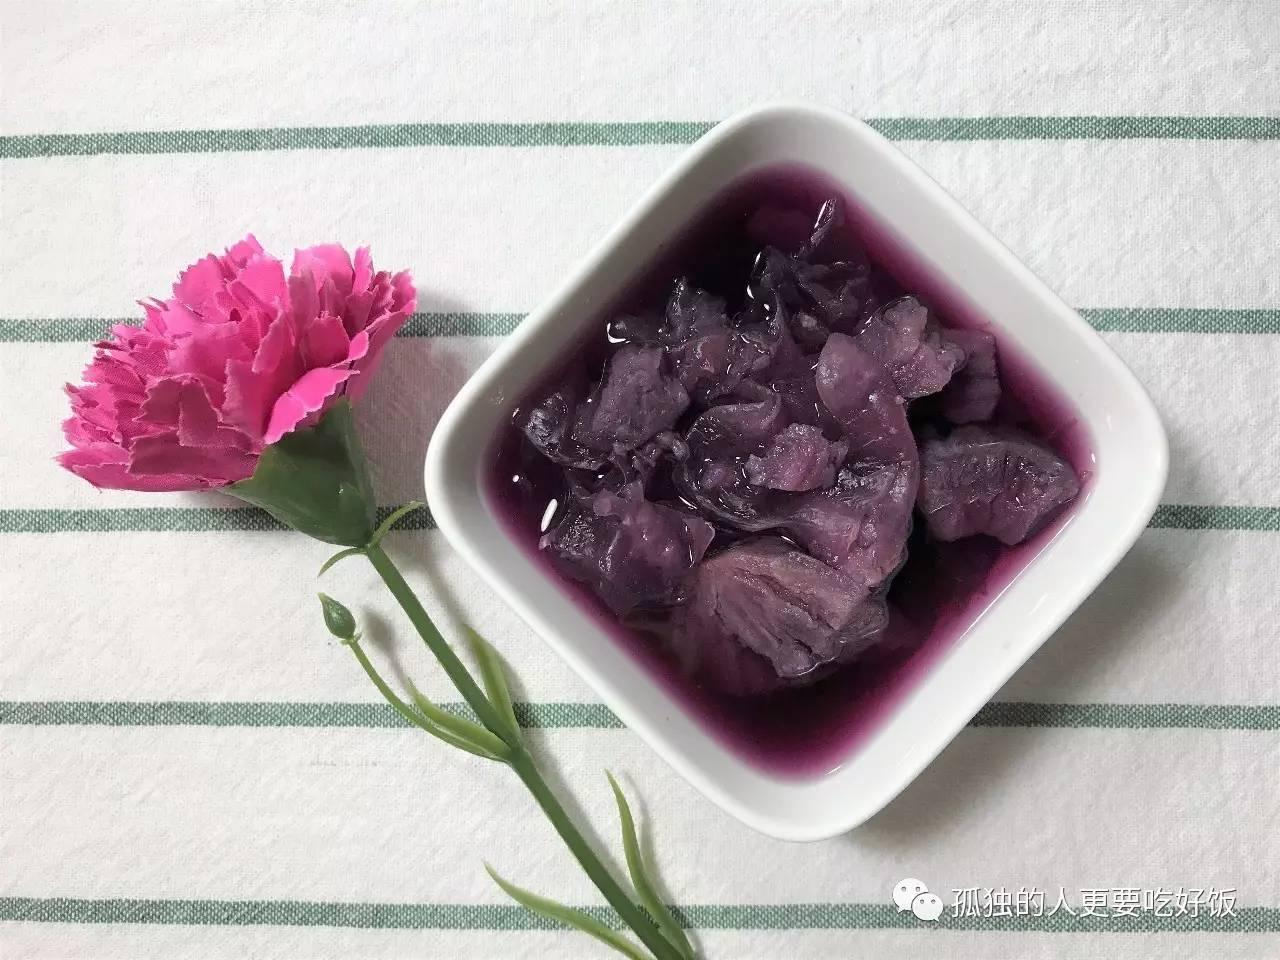 紫薯南瓜圓桂花糖水 by 甜蜜蘋果的美食與攝影世界 - 愛料理